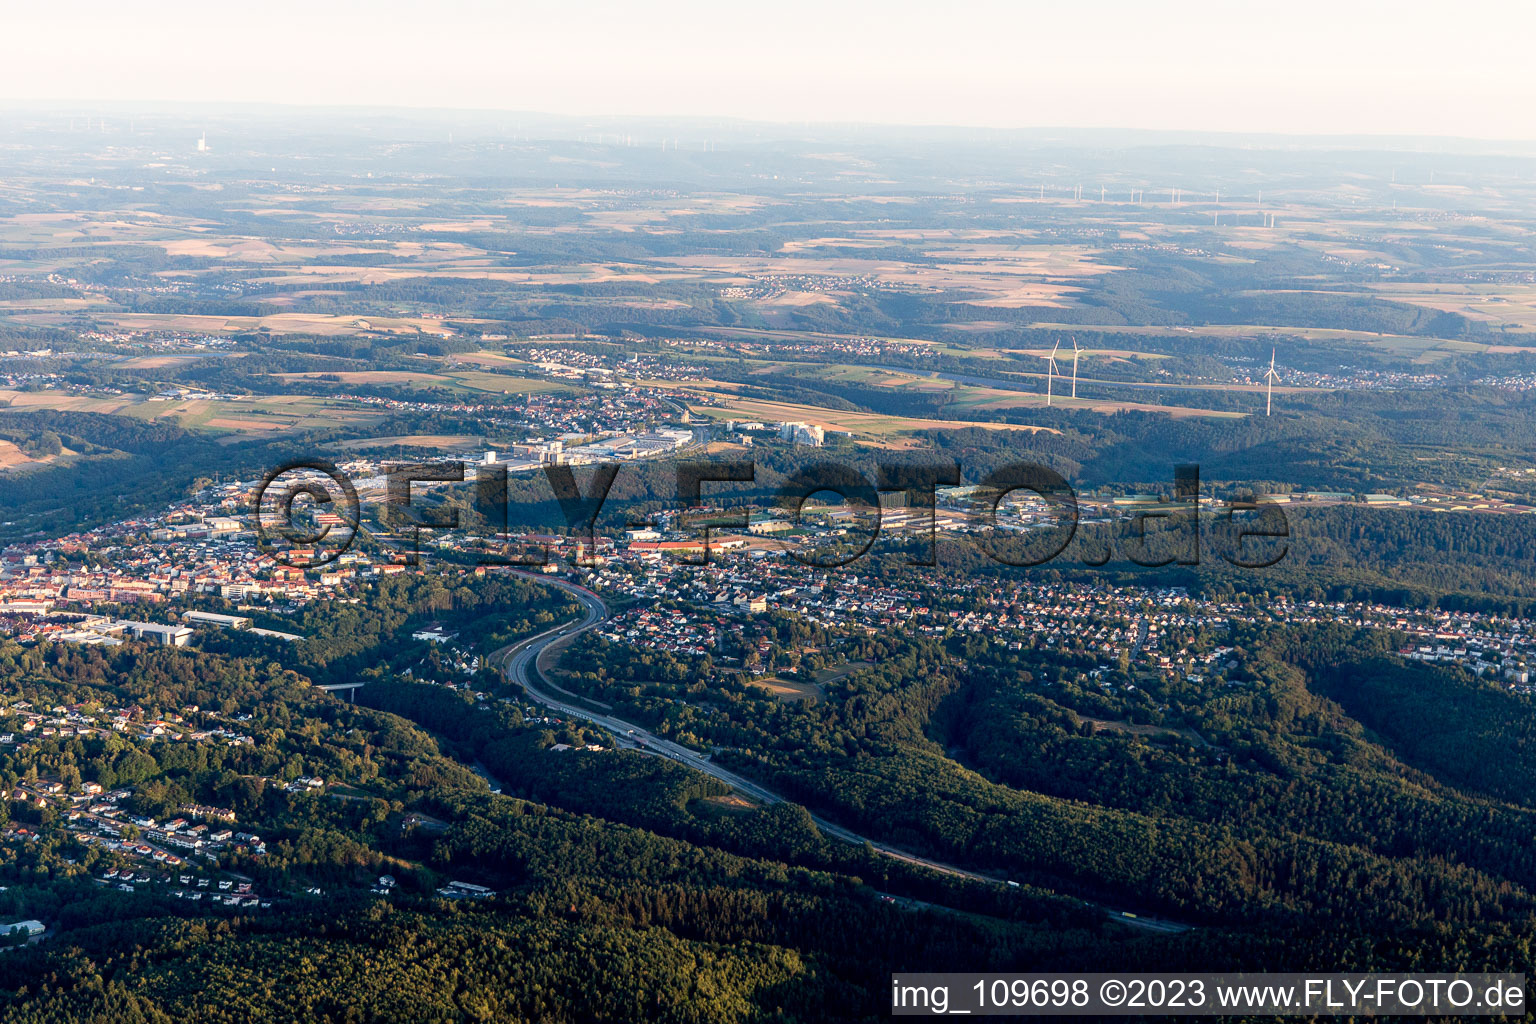 Pirmasens im Bundesland Rheinland-Pfalz, Deutschland aus der Luft betrachtet